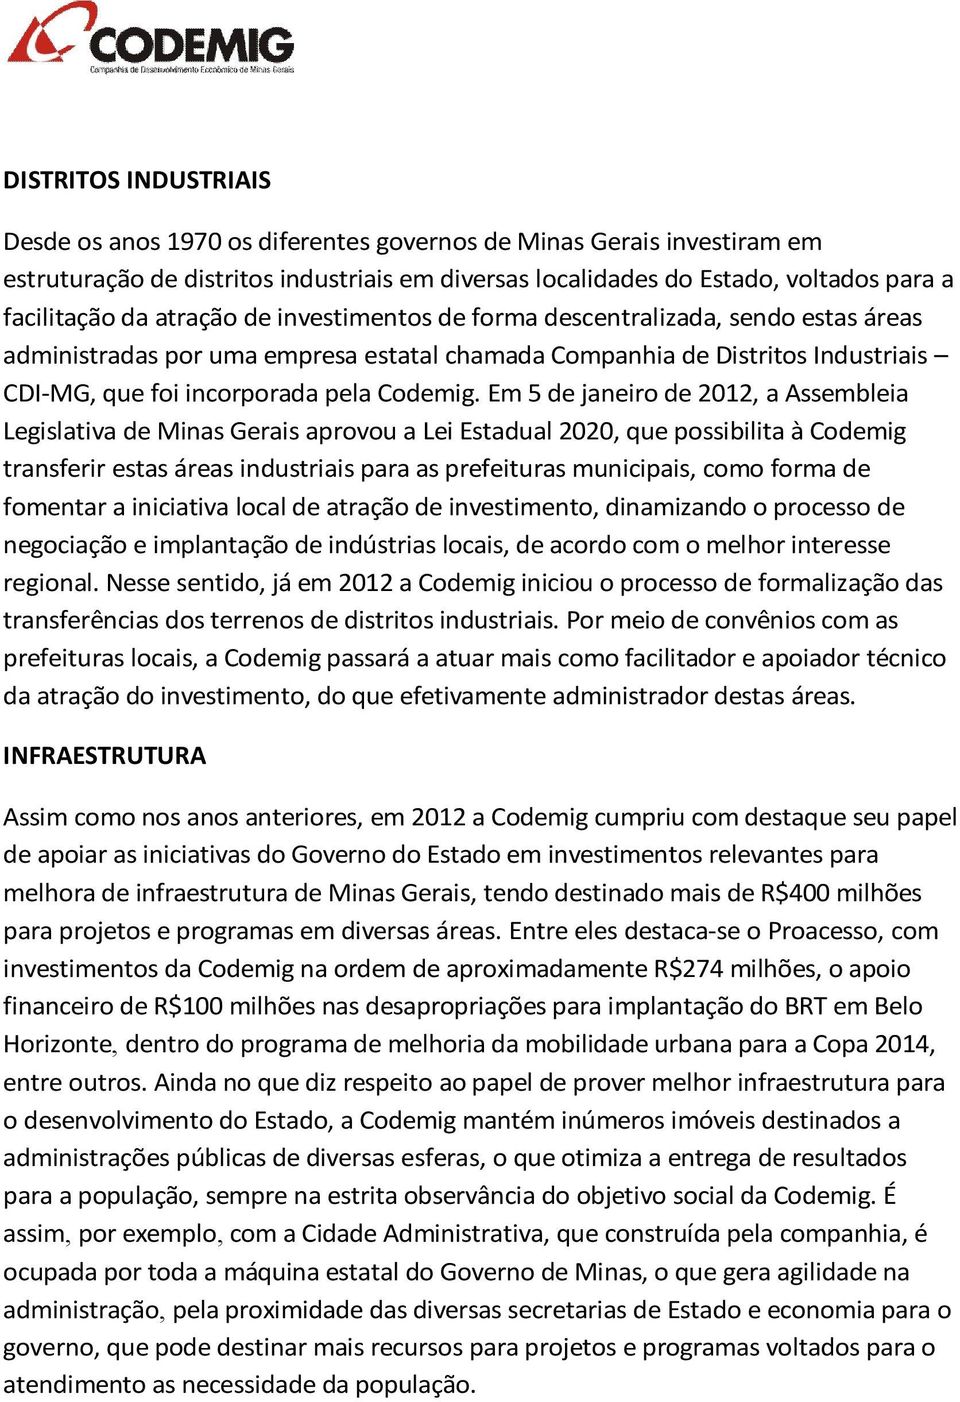 Em 5 de janeiro de 2012, a Assembleia Legislativa de Minas Gerais aprovou a Lei Estadual 2020, que possibilita à Codemig transferir estas áreas industriais para as prefeituras municipais, como forma